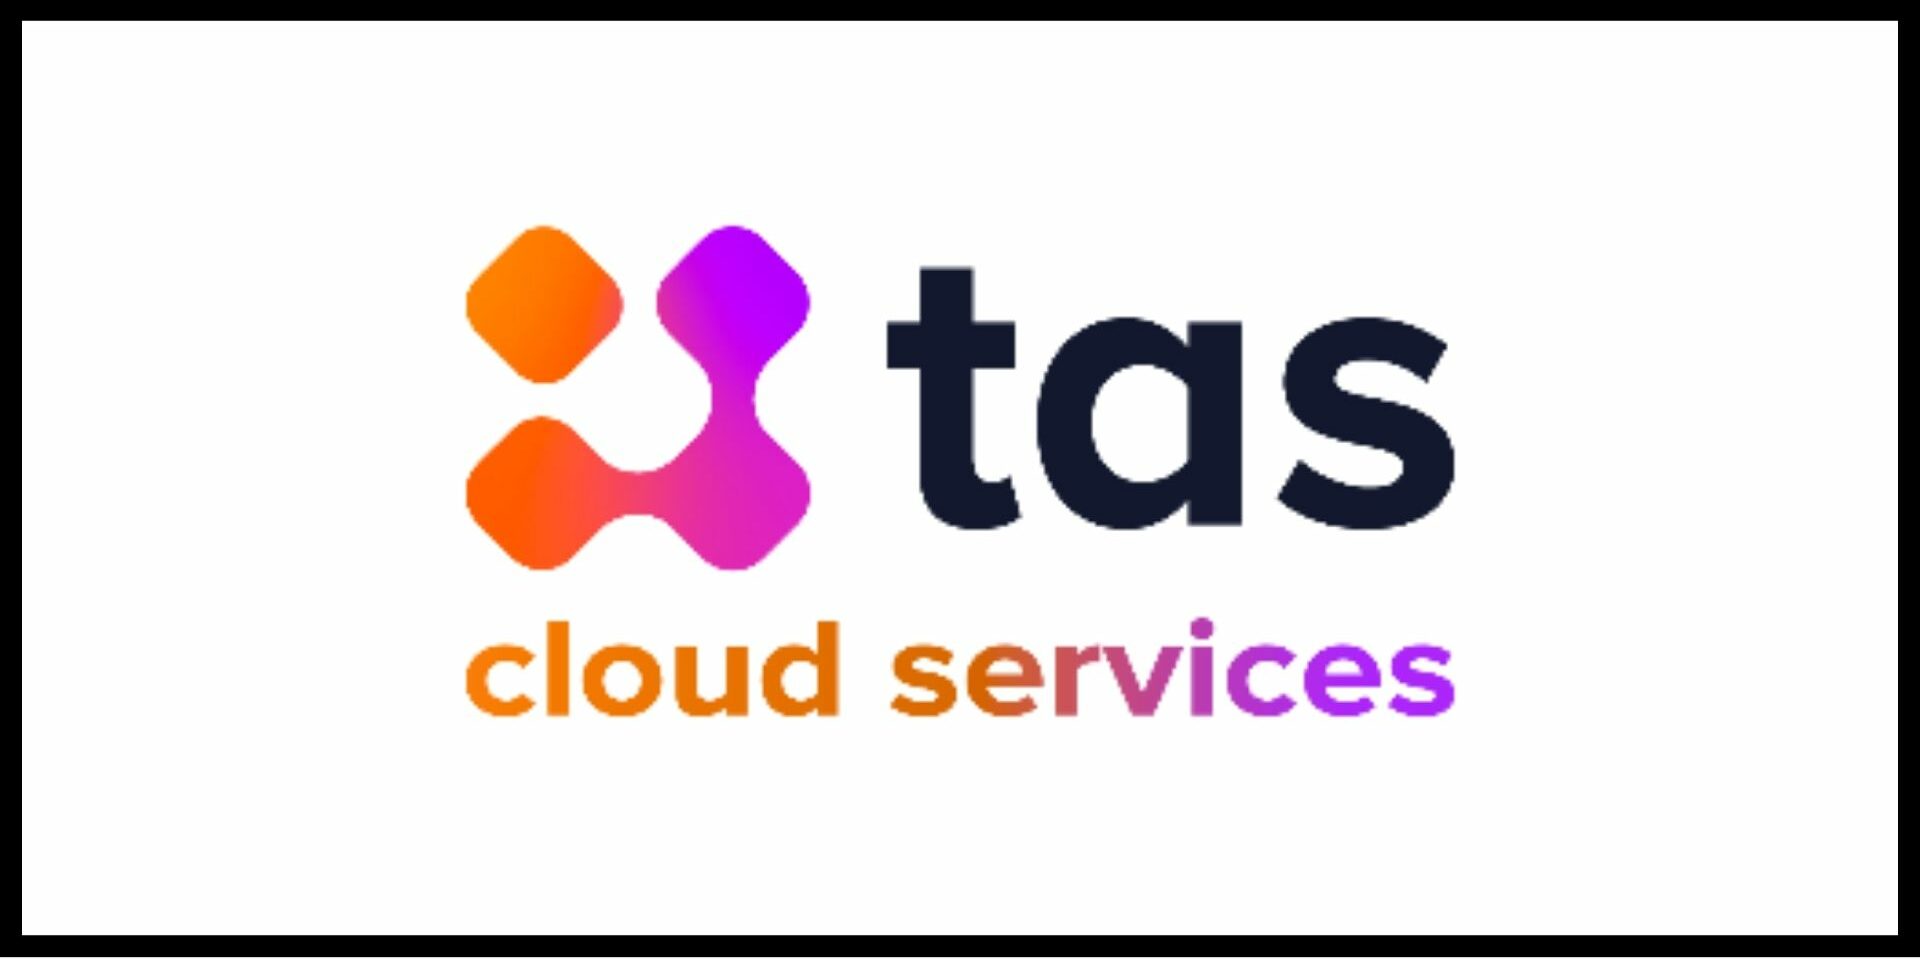 Logo TAS